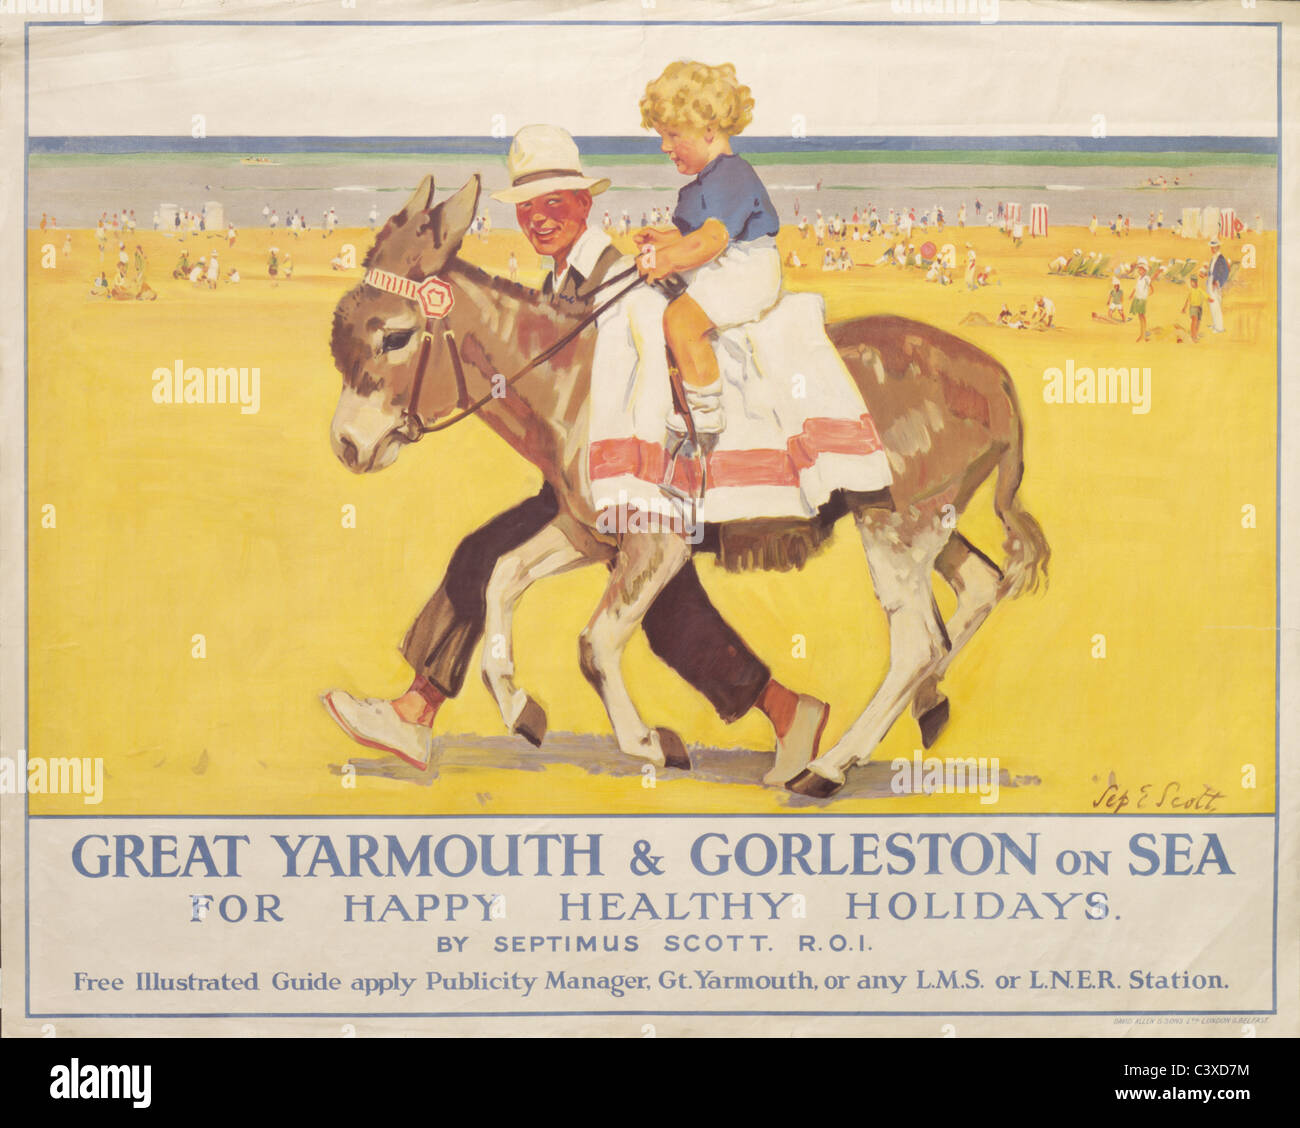 Great Yarmouth et Mali Zvornik sur mer, par Septimus Scott. Angleterre, début du 20e siècle Banque D'Images